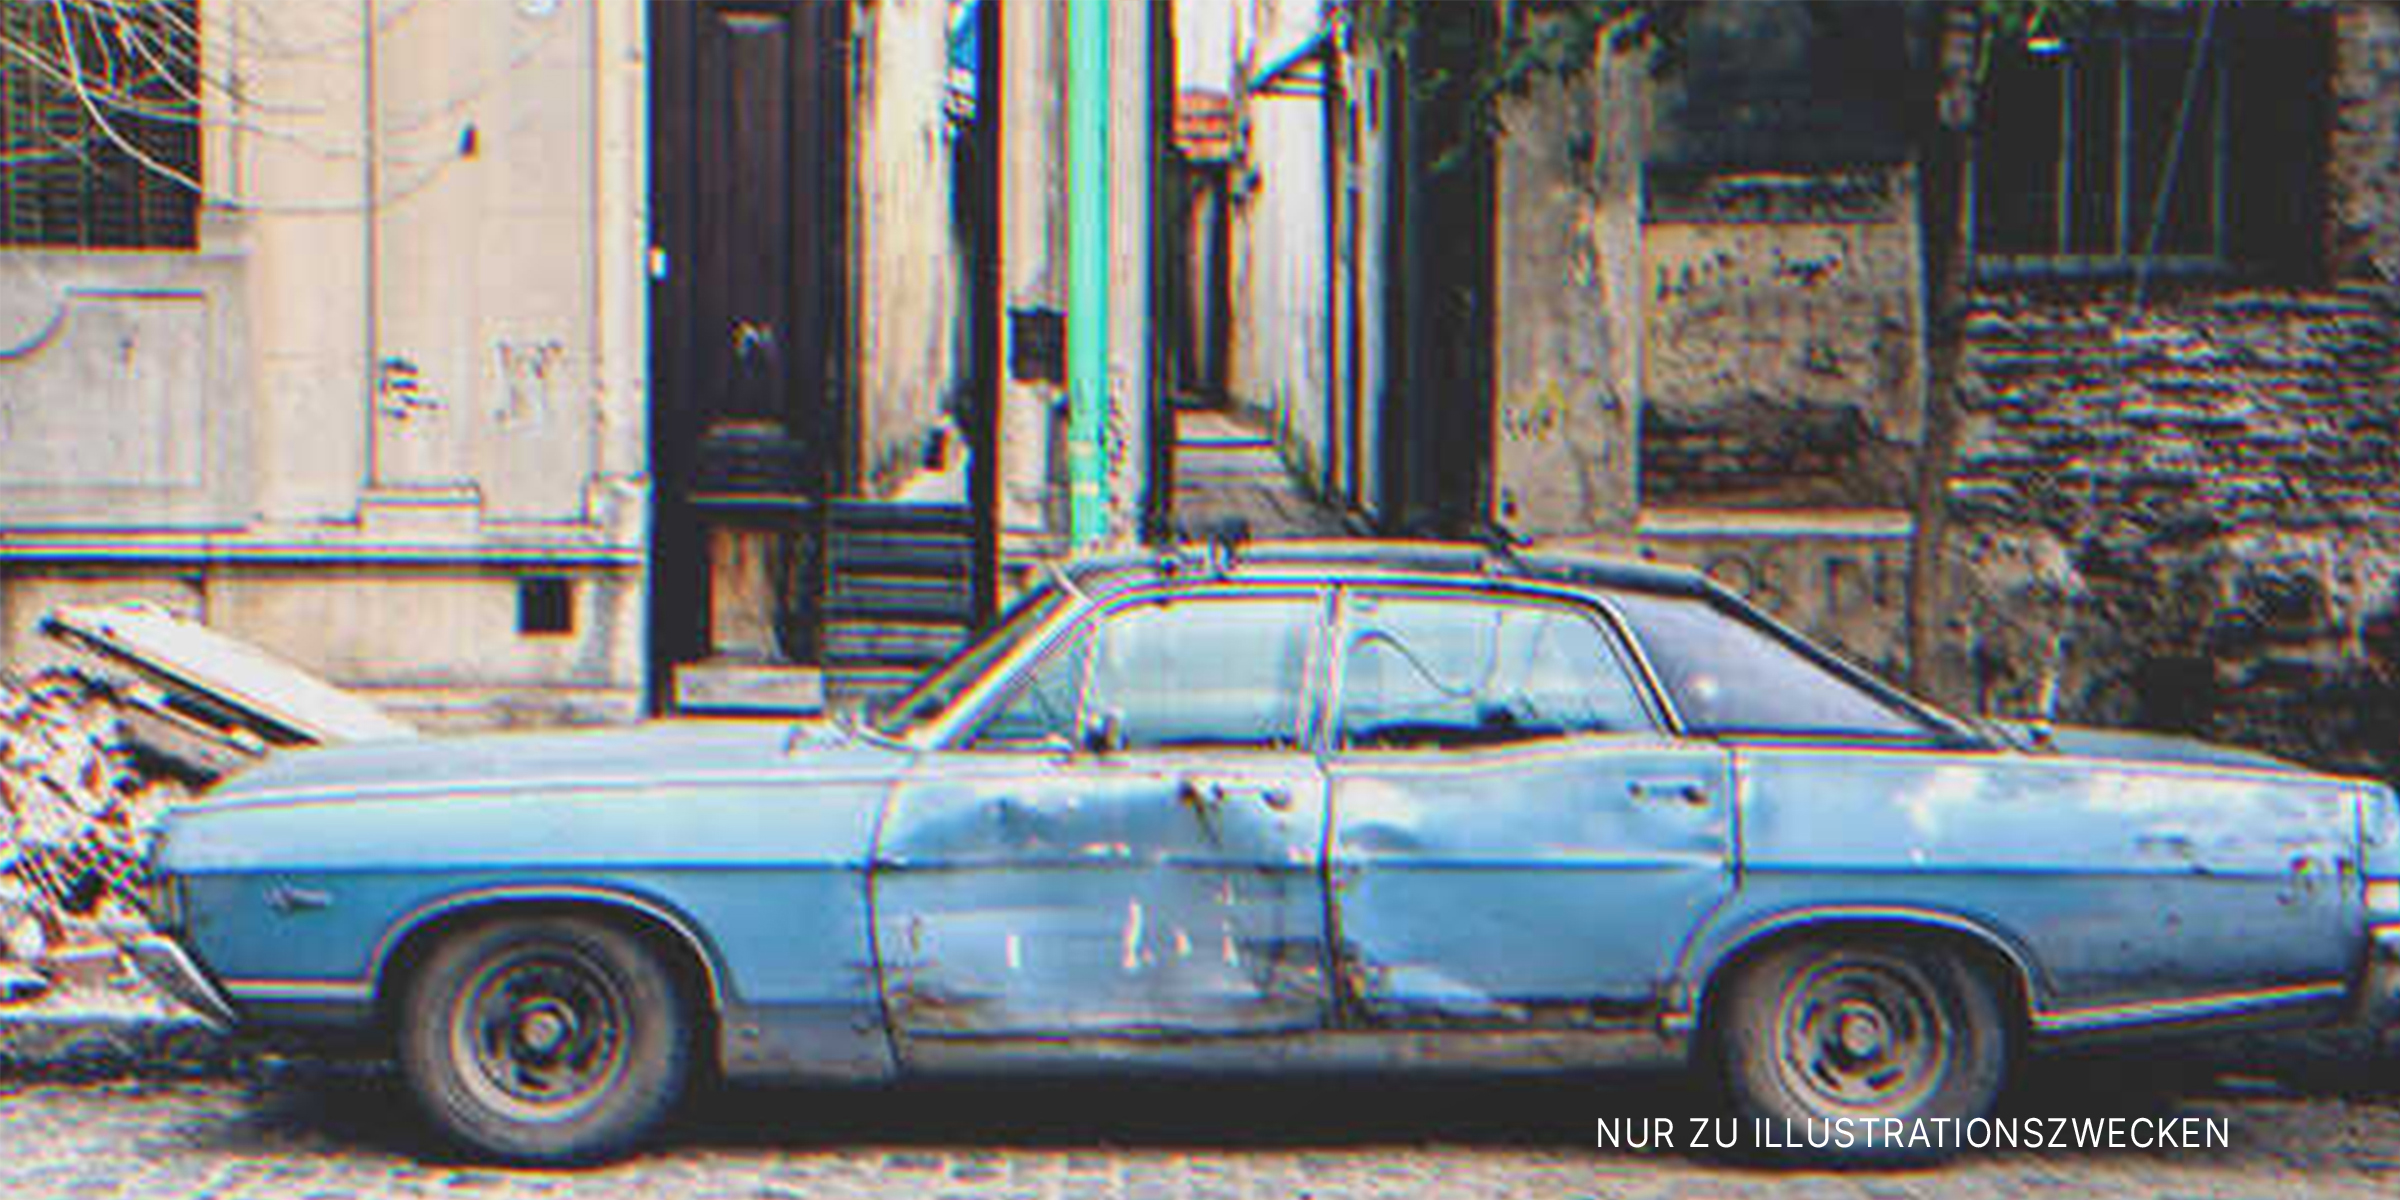 Ein altes Auto | Quelle: Shutterstock